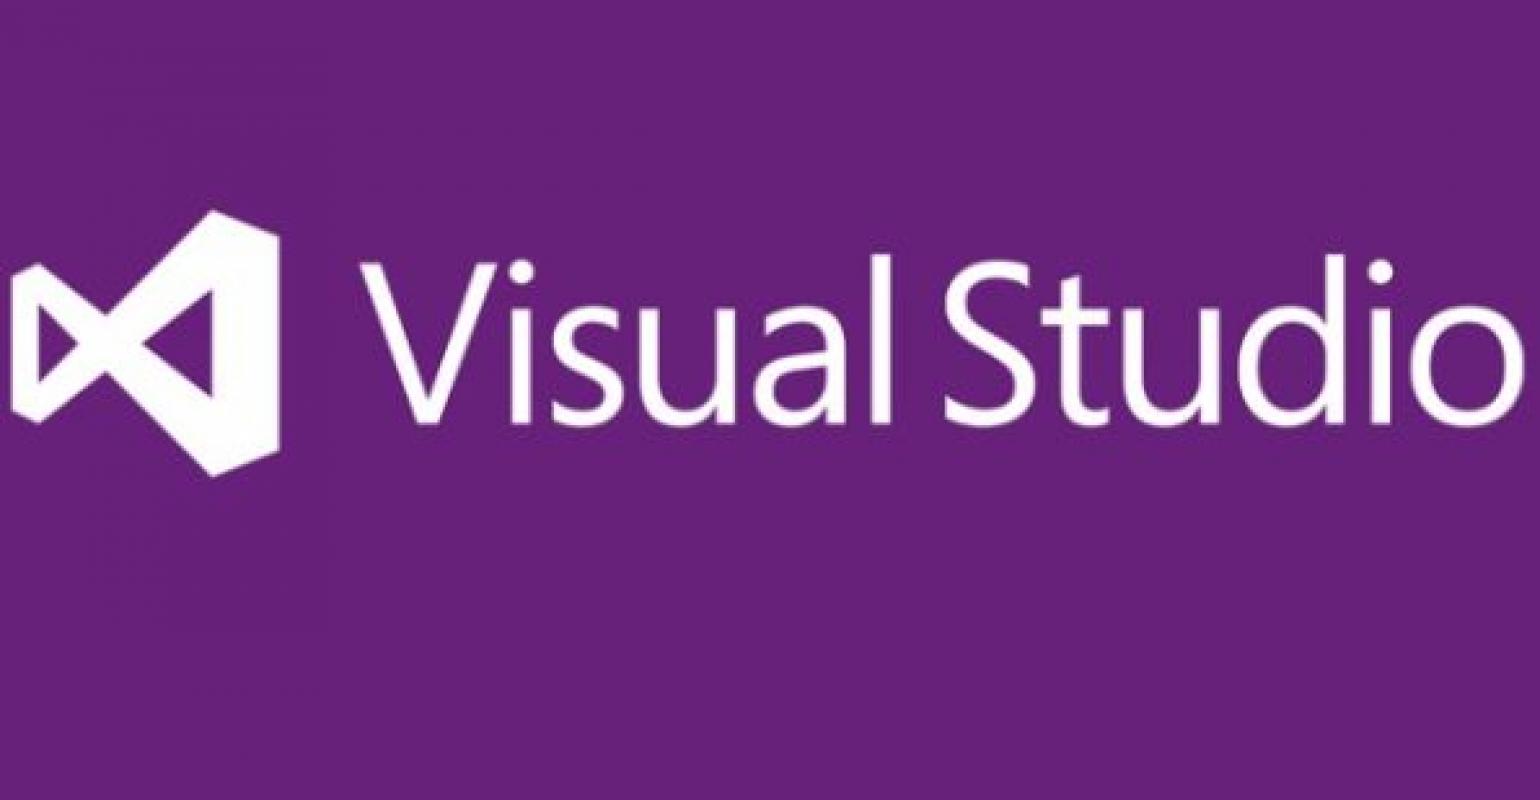 Visual Studio 2013 và .NET Framework 4.5.1 là một bộ công cụ tuyệt vời cho các nhà phát triển phần mềm. Nó cung cấp rất nhiều tính năng thú vị để giúp bạn tạo ra những chương trình tuyệt vời. Nếu bạn đang tìm kiếm một công cụ đáng tin cậy để phát triển phần mềm, hãy xem hình ảnh liên quan để biết thêm chi tiết.